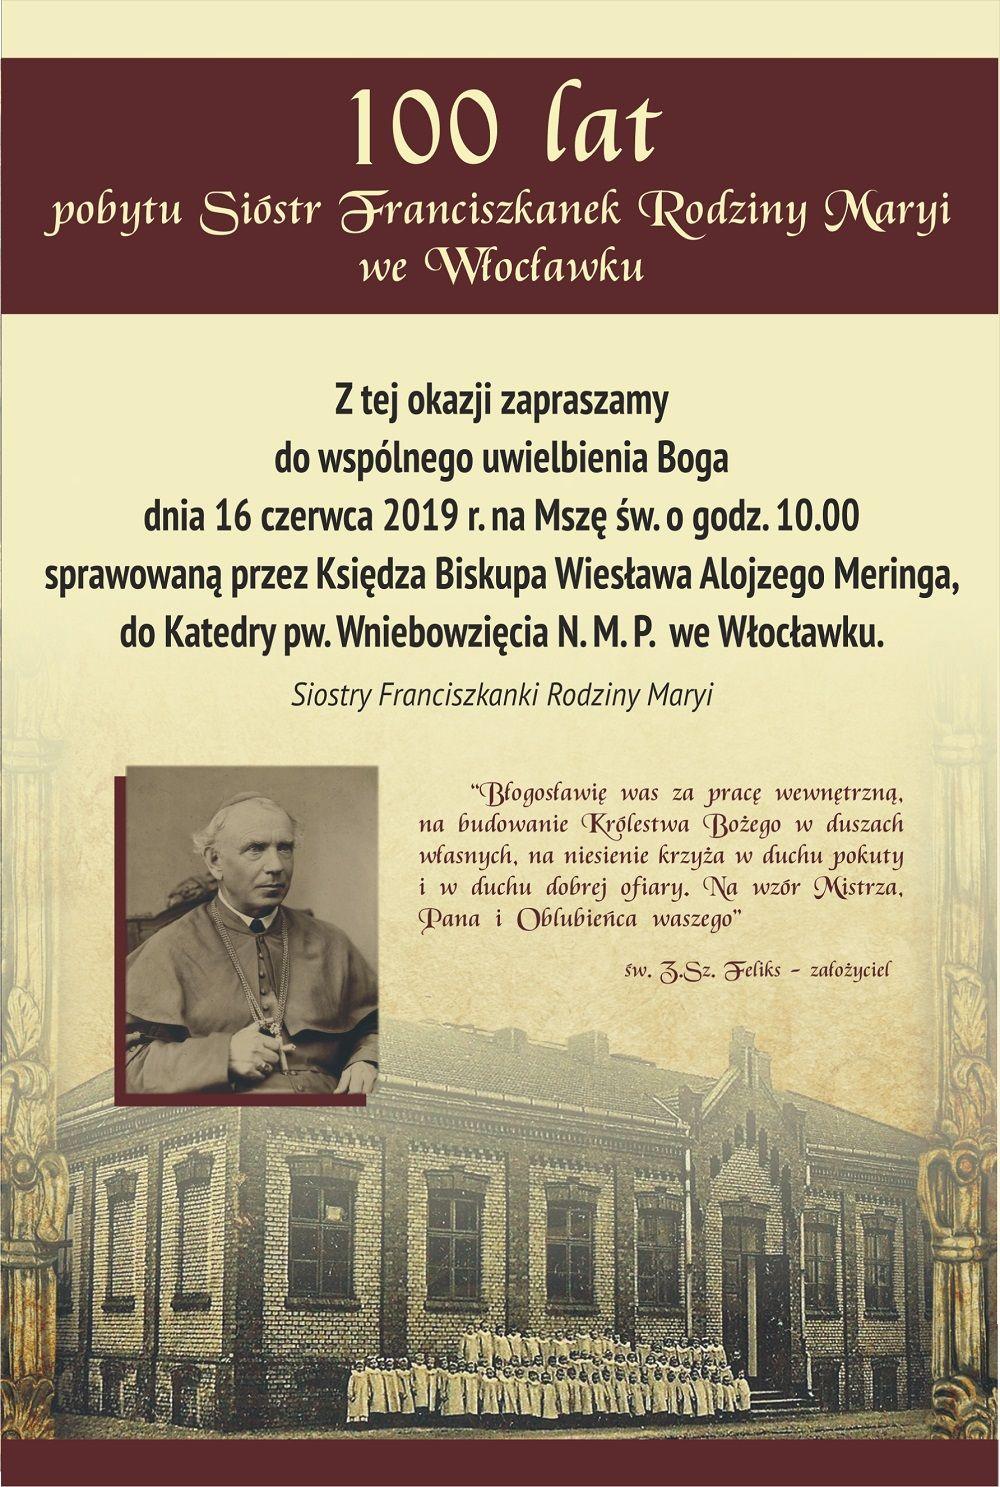 100-lecie Franciszkanek Rodziny Maryi we Włocławku (zapowiedź)